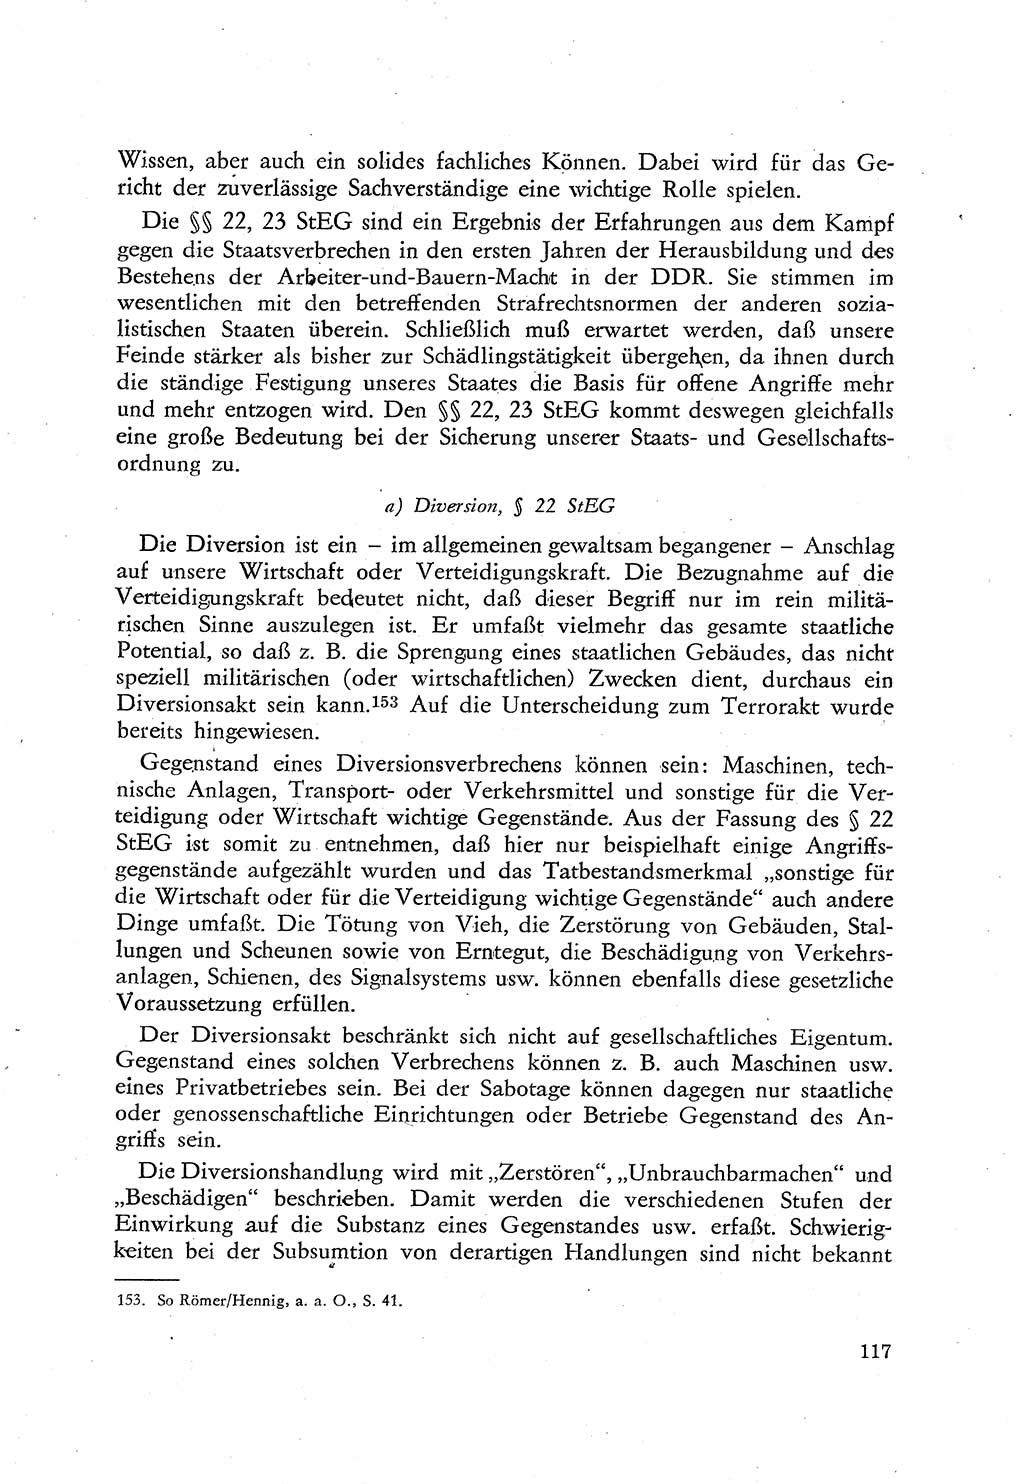 Beiträge zum Strafrecht [Deutsche Demokratische Republik (DDR)], Staatsverbrechen 1959, Seite 117 (Beitr. Strafr. DDR St.-Verbr. 1959, S. 117)